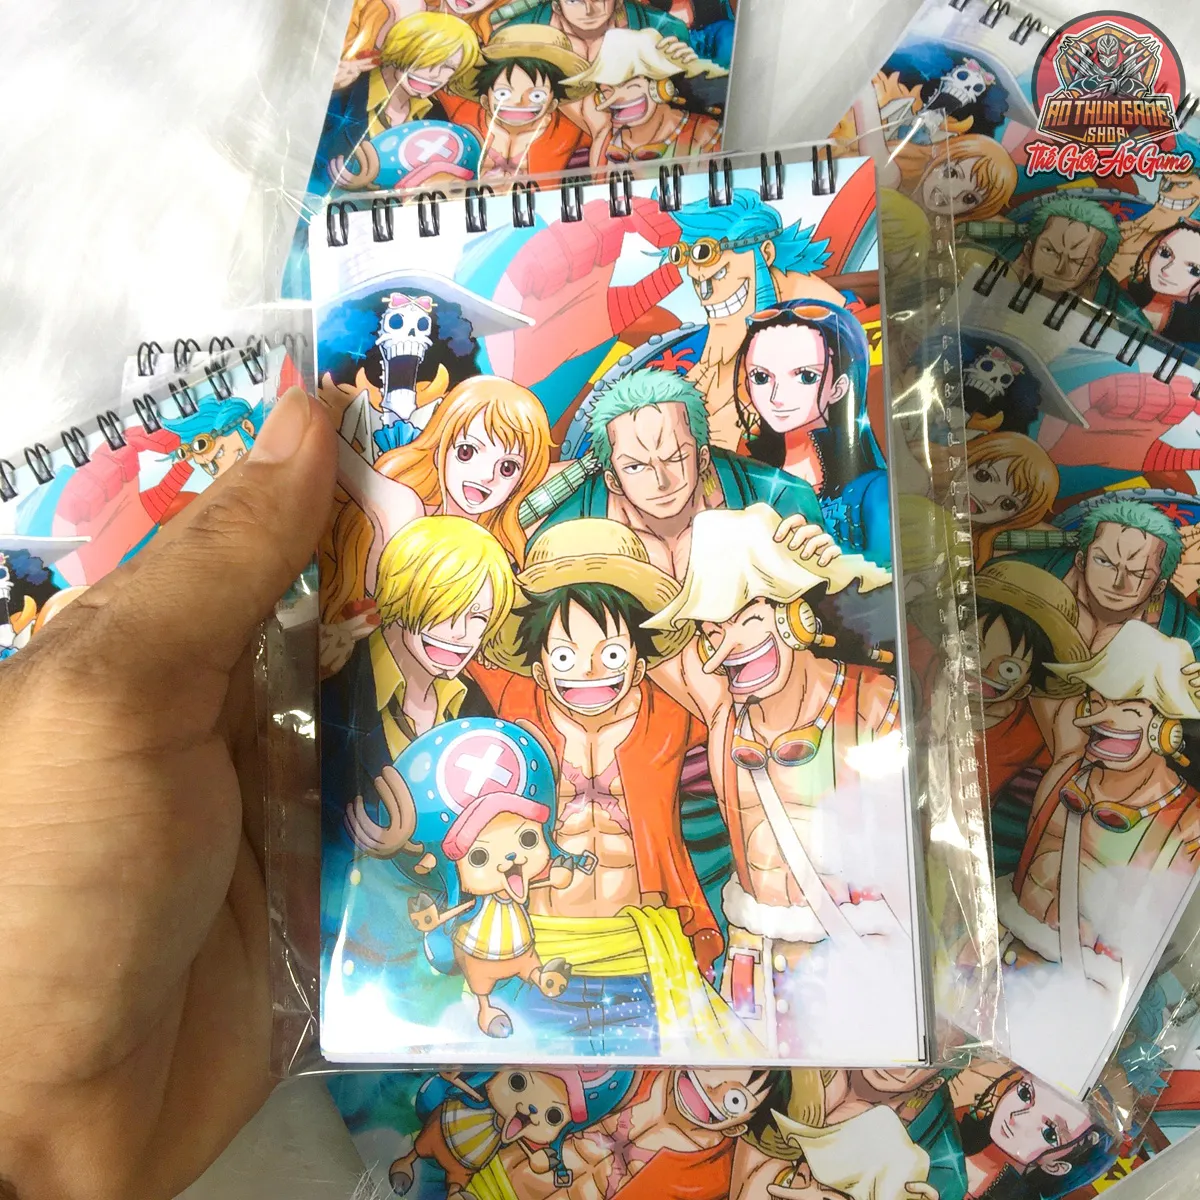 Sổ tay nhóm Luffy là một món đồ rất phổ biến và được nhiều người yêu thích. Nếu bạn muốn sở hữu cho mình một cuốn sổ tay độc đáo và đầy tính cá nhân, hãy xem hình ảnh liên quan để tìm kiếm ý tưởng cho chiếc sổ tay nhóm Luffy của bạn.